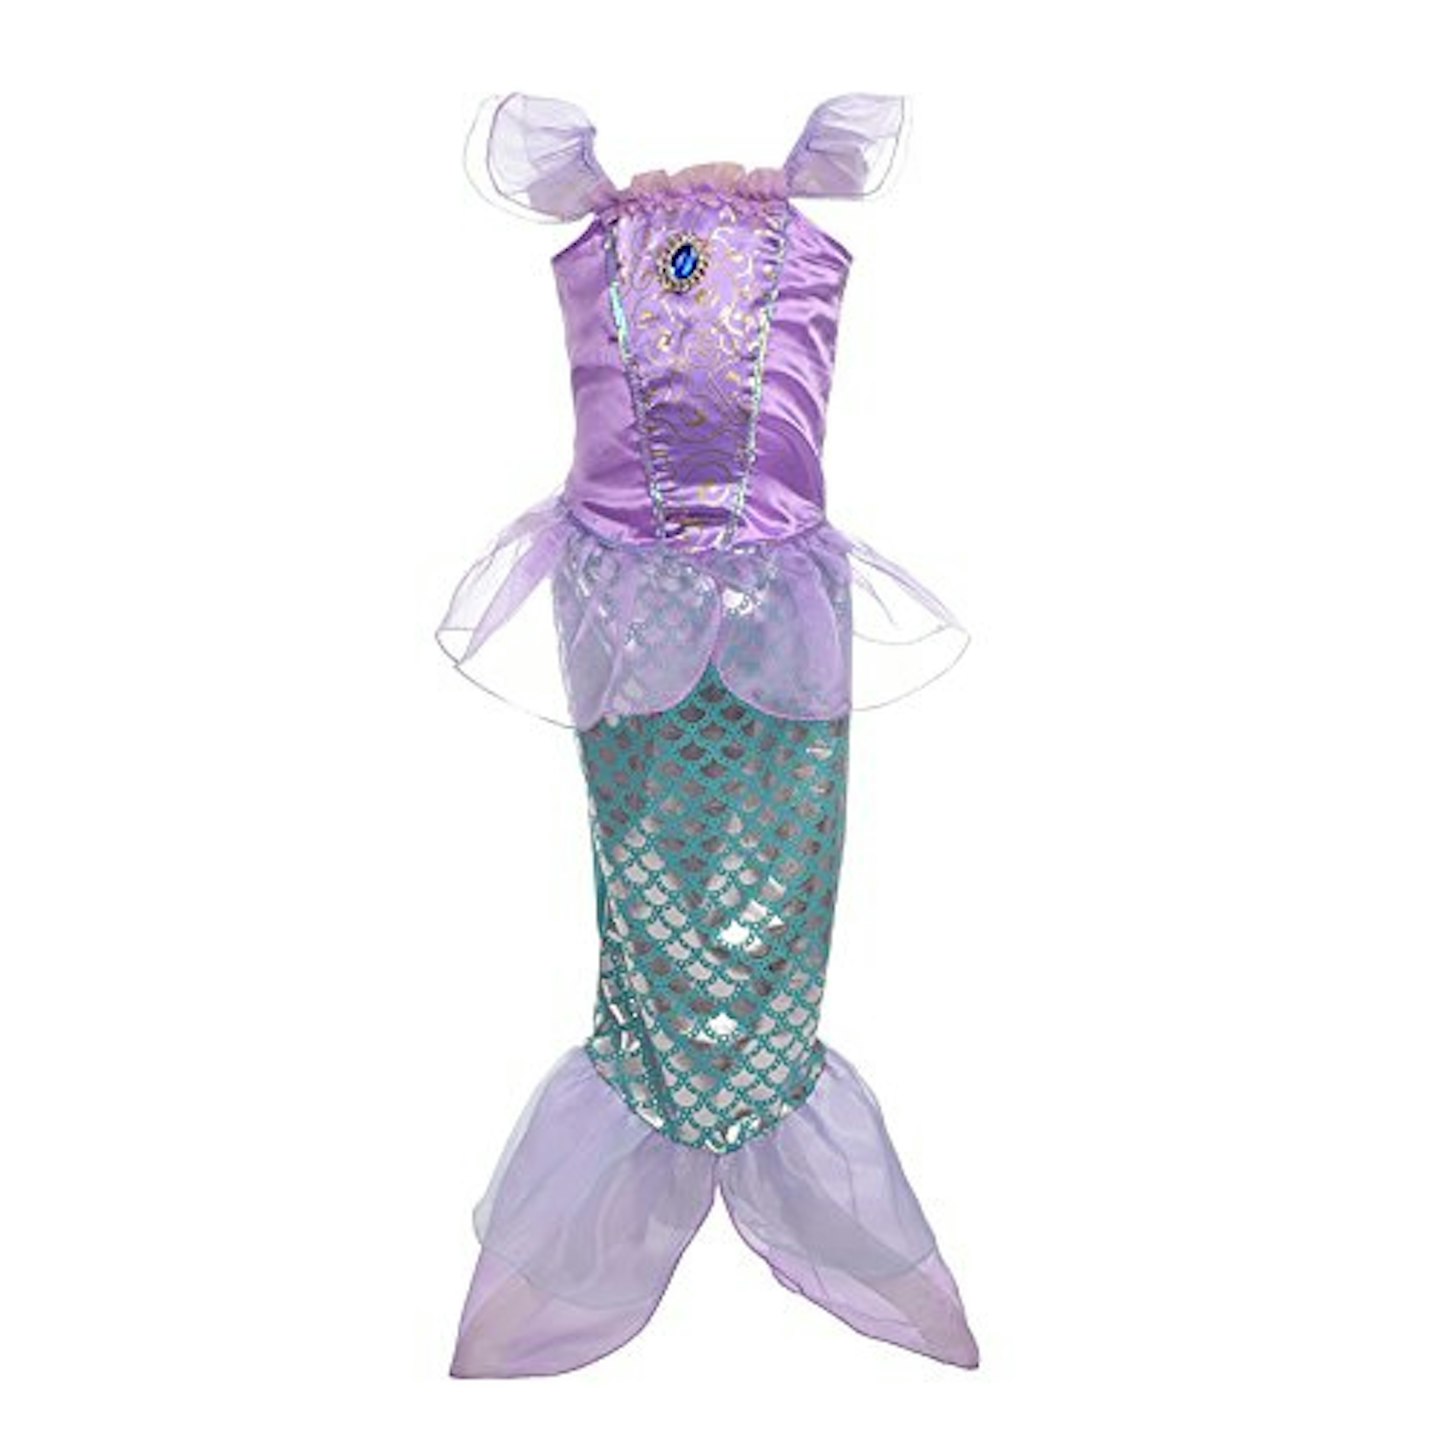  Mermaid Costume